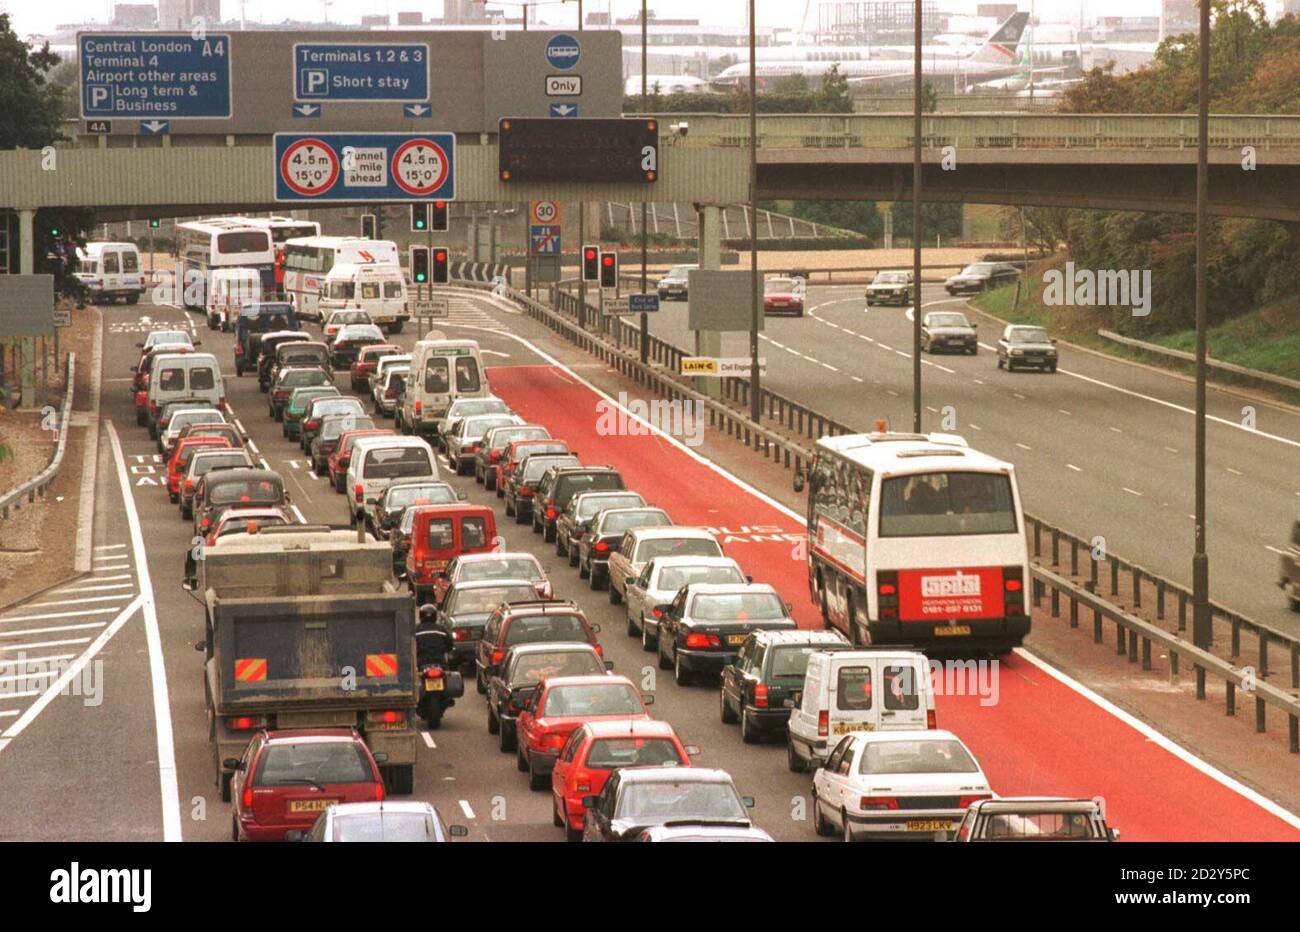 Ein Bus nutzt die neue und erste Busspur auf einer nationalen Autobahn, nachdem sie zuvor auf der M4-Schnellstraße von London nach Heathrow eröffnet wurde. Es wird gehofft, dass die 1 Million, 3 Meilen Spur Verkehrsstaus auf dem Weg zum und vom Flughafen Heathrow erleichtern wird. Stockfoto